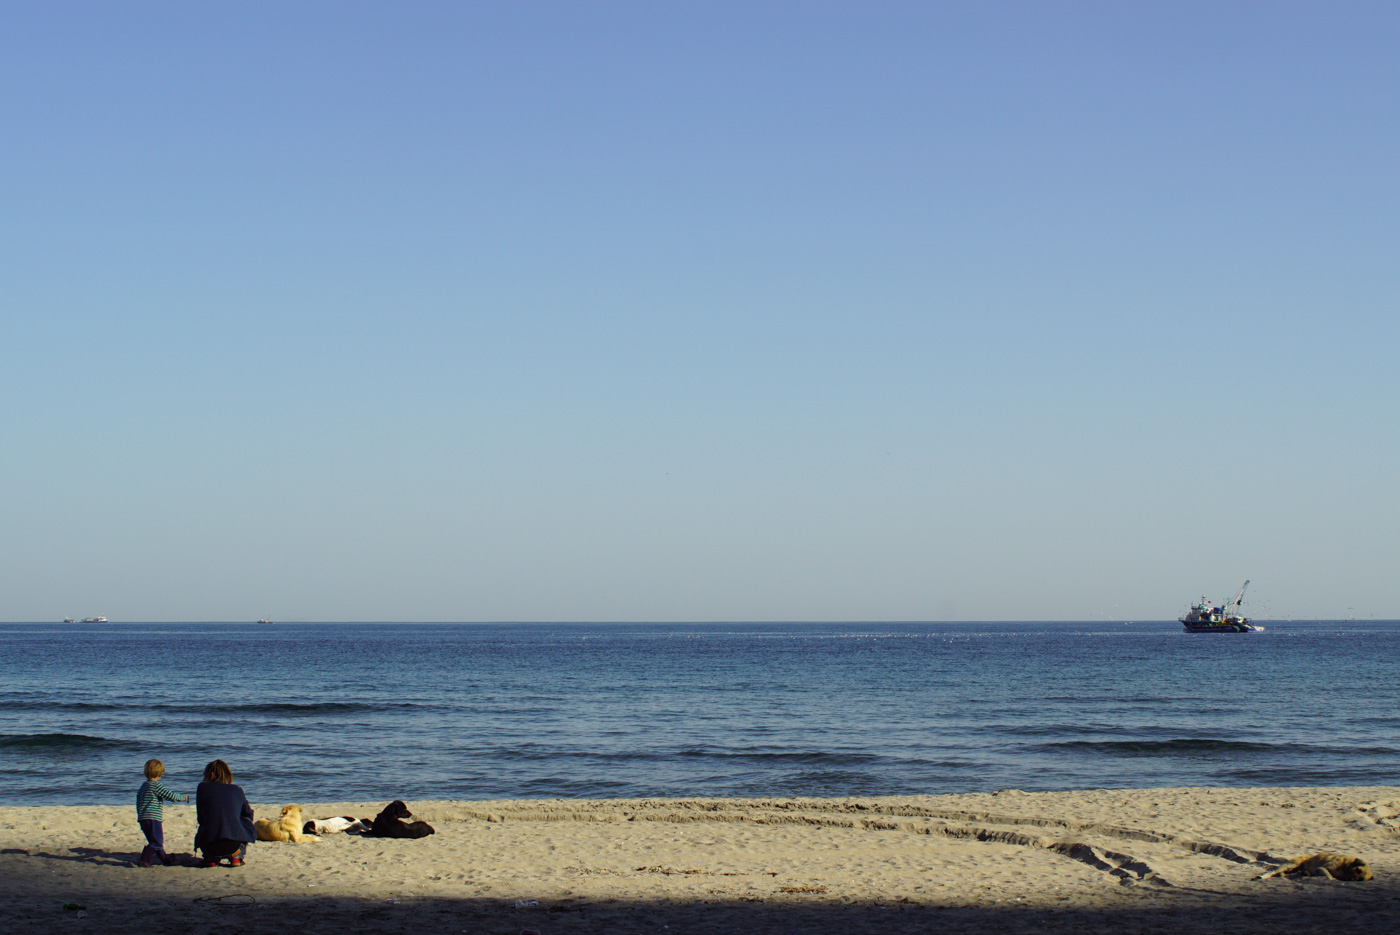 Luk steht neben Paul der in der Hocke sitzt und sie schauen aufs Meer. Neben ihnen liegen drei Hunde im Sand. Dahinter zeichnet sich das ruhige Schwarze Meer rechts am Bildrand fährt ein Fischkutter.